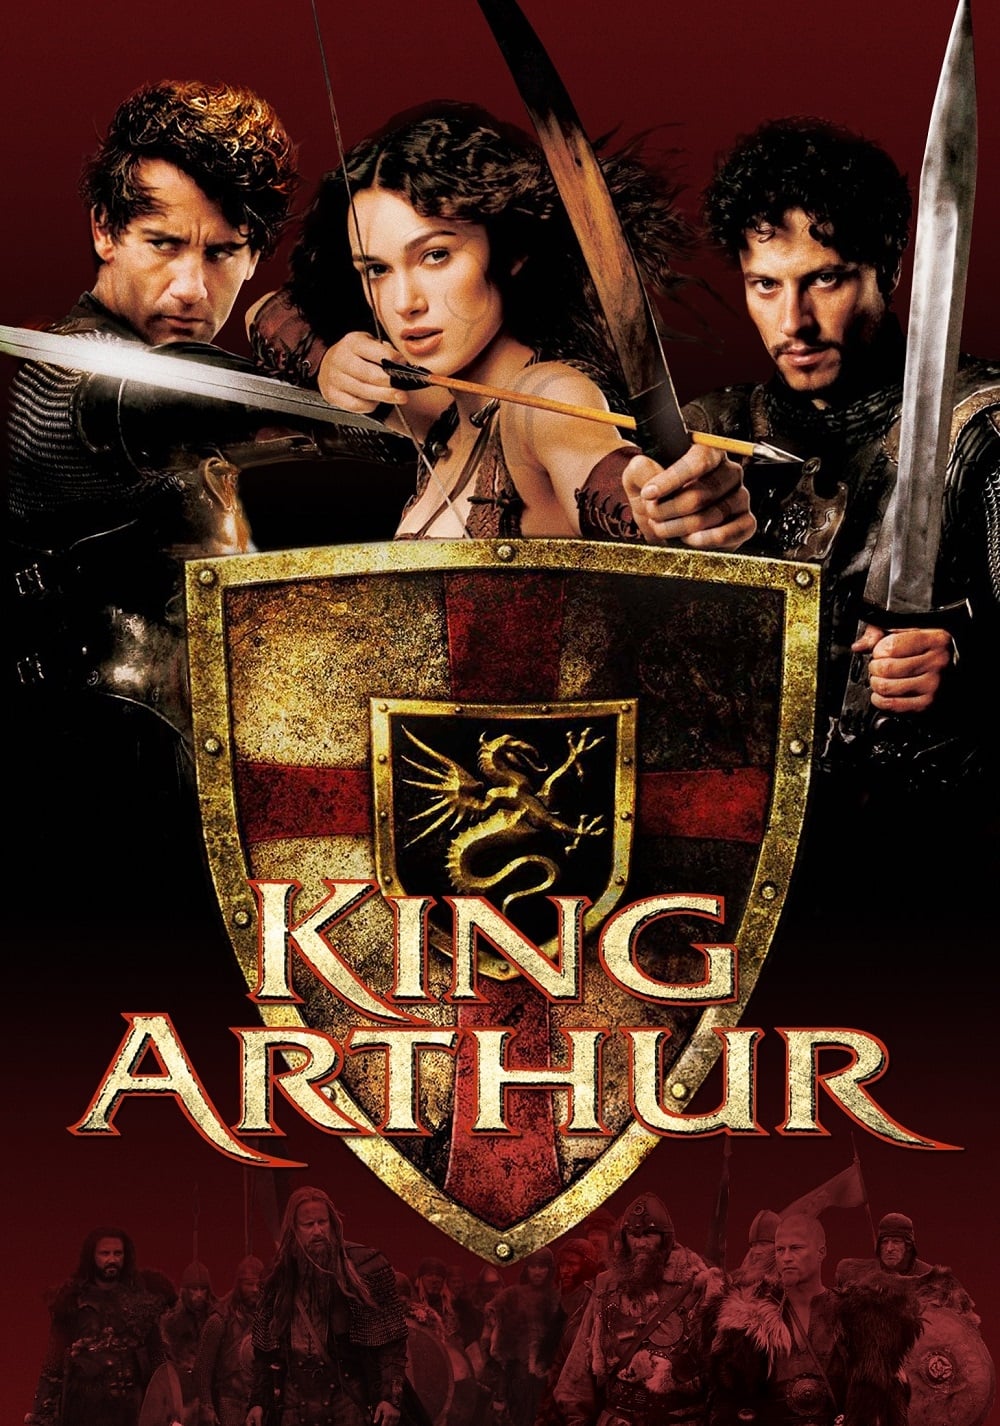 Stiahni si Filmy CZ/SK dabing Král Artuš / King Arthur (2004)[CZ Dabing][1080p] = CSFD 62%